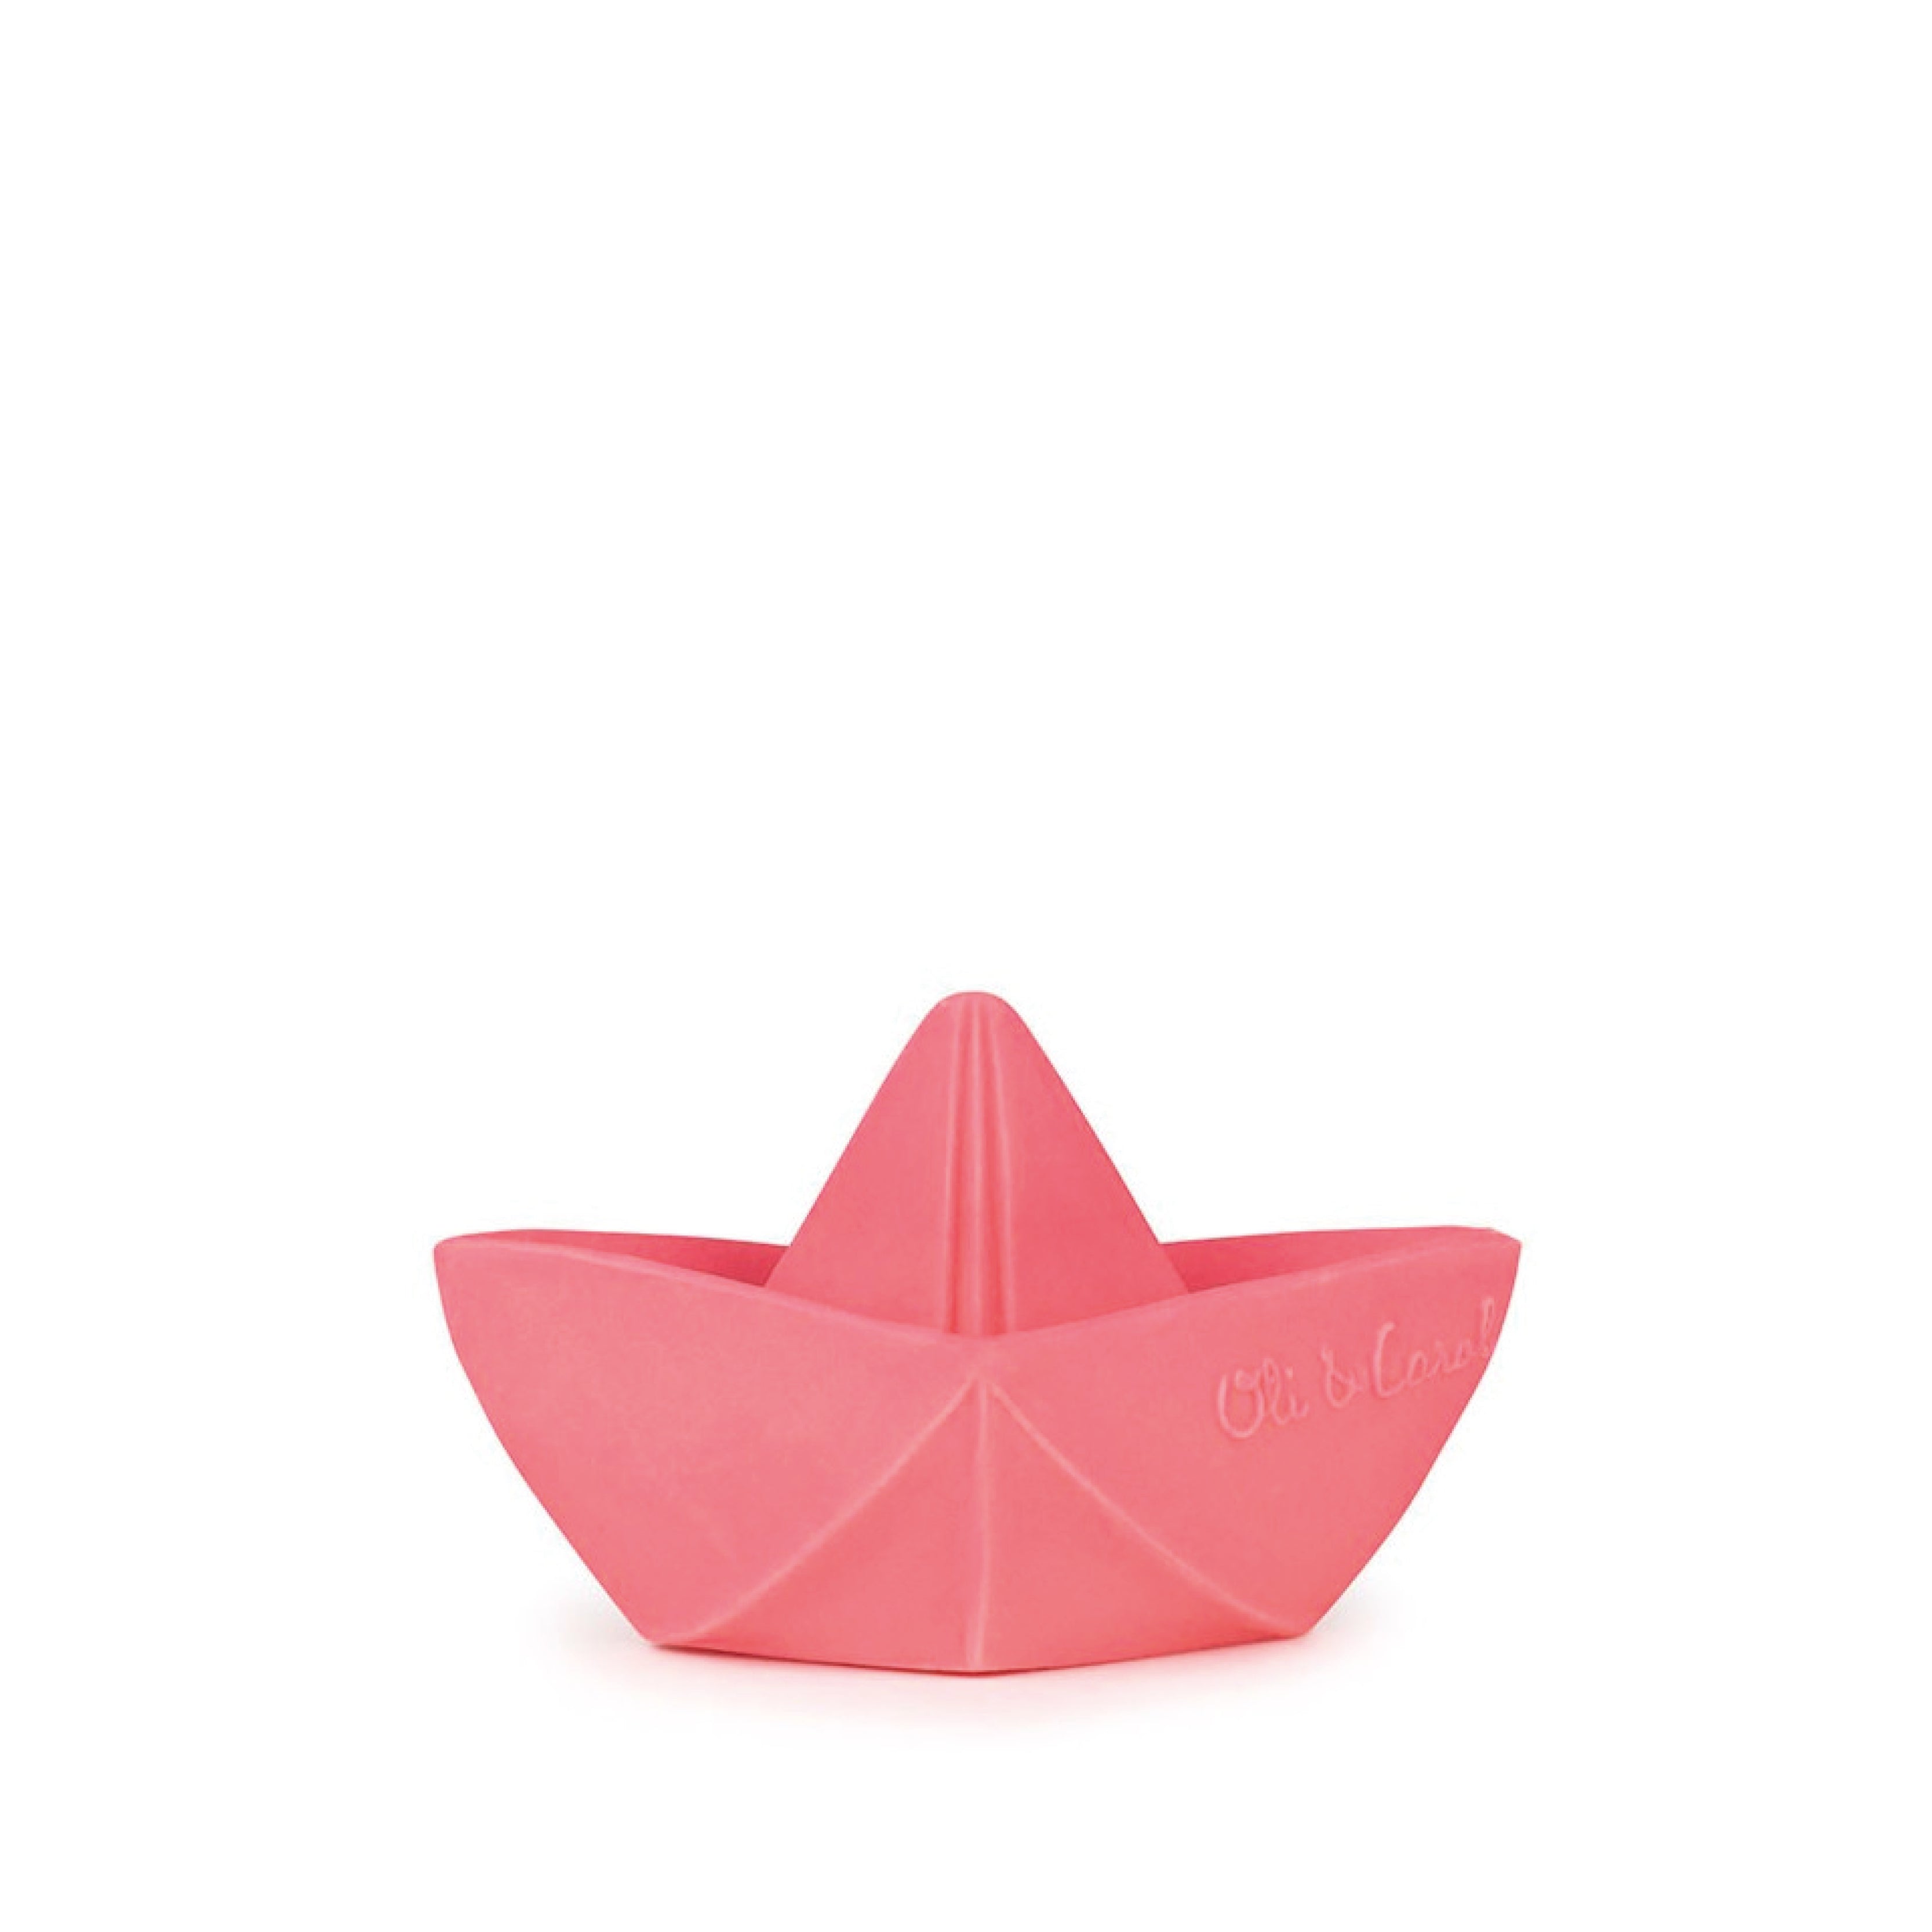 Baby Beißring Teether Oli & Carol Origami Boot in pink aus Naturkautschuk und von Hand bemalt mit speiseechten Farben - 100% natürlich von Oli und Carol bei kinder und konsorten Düsseldorf